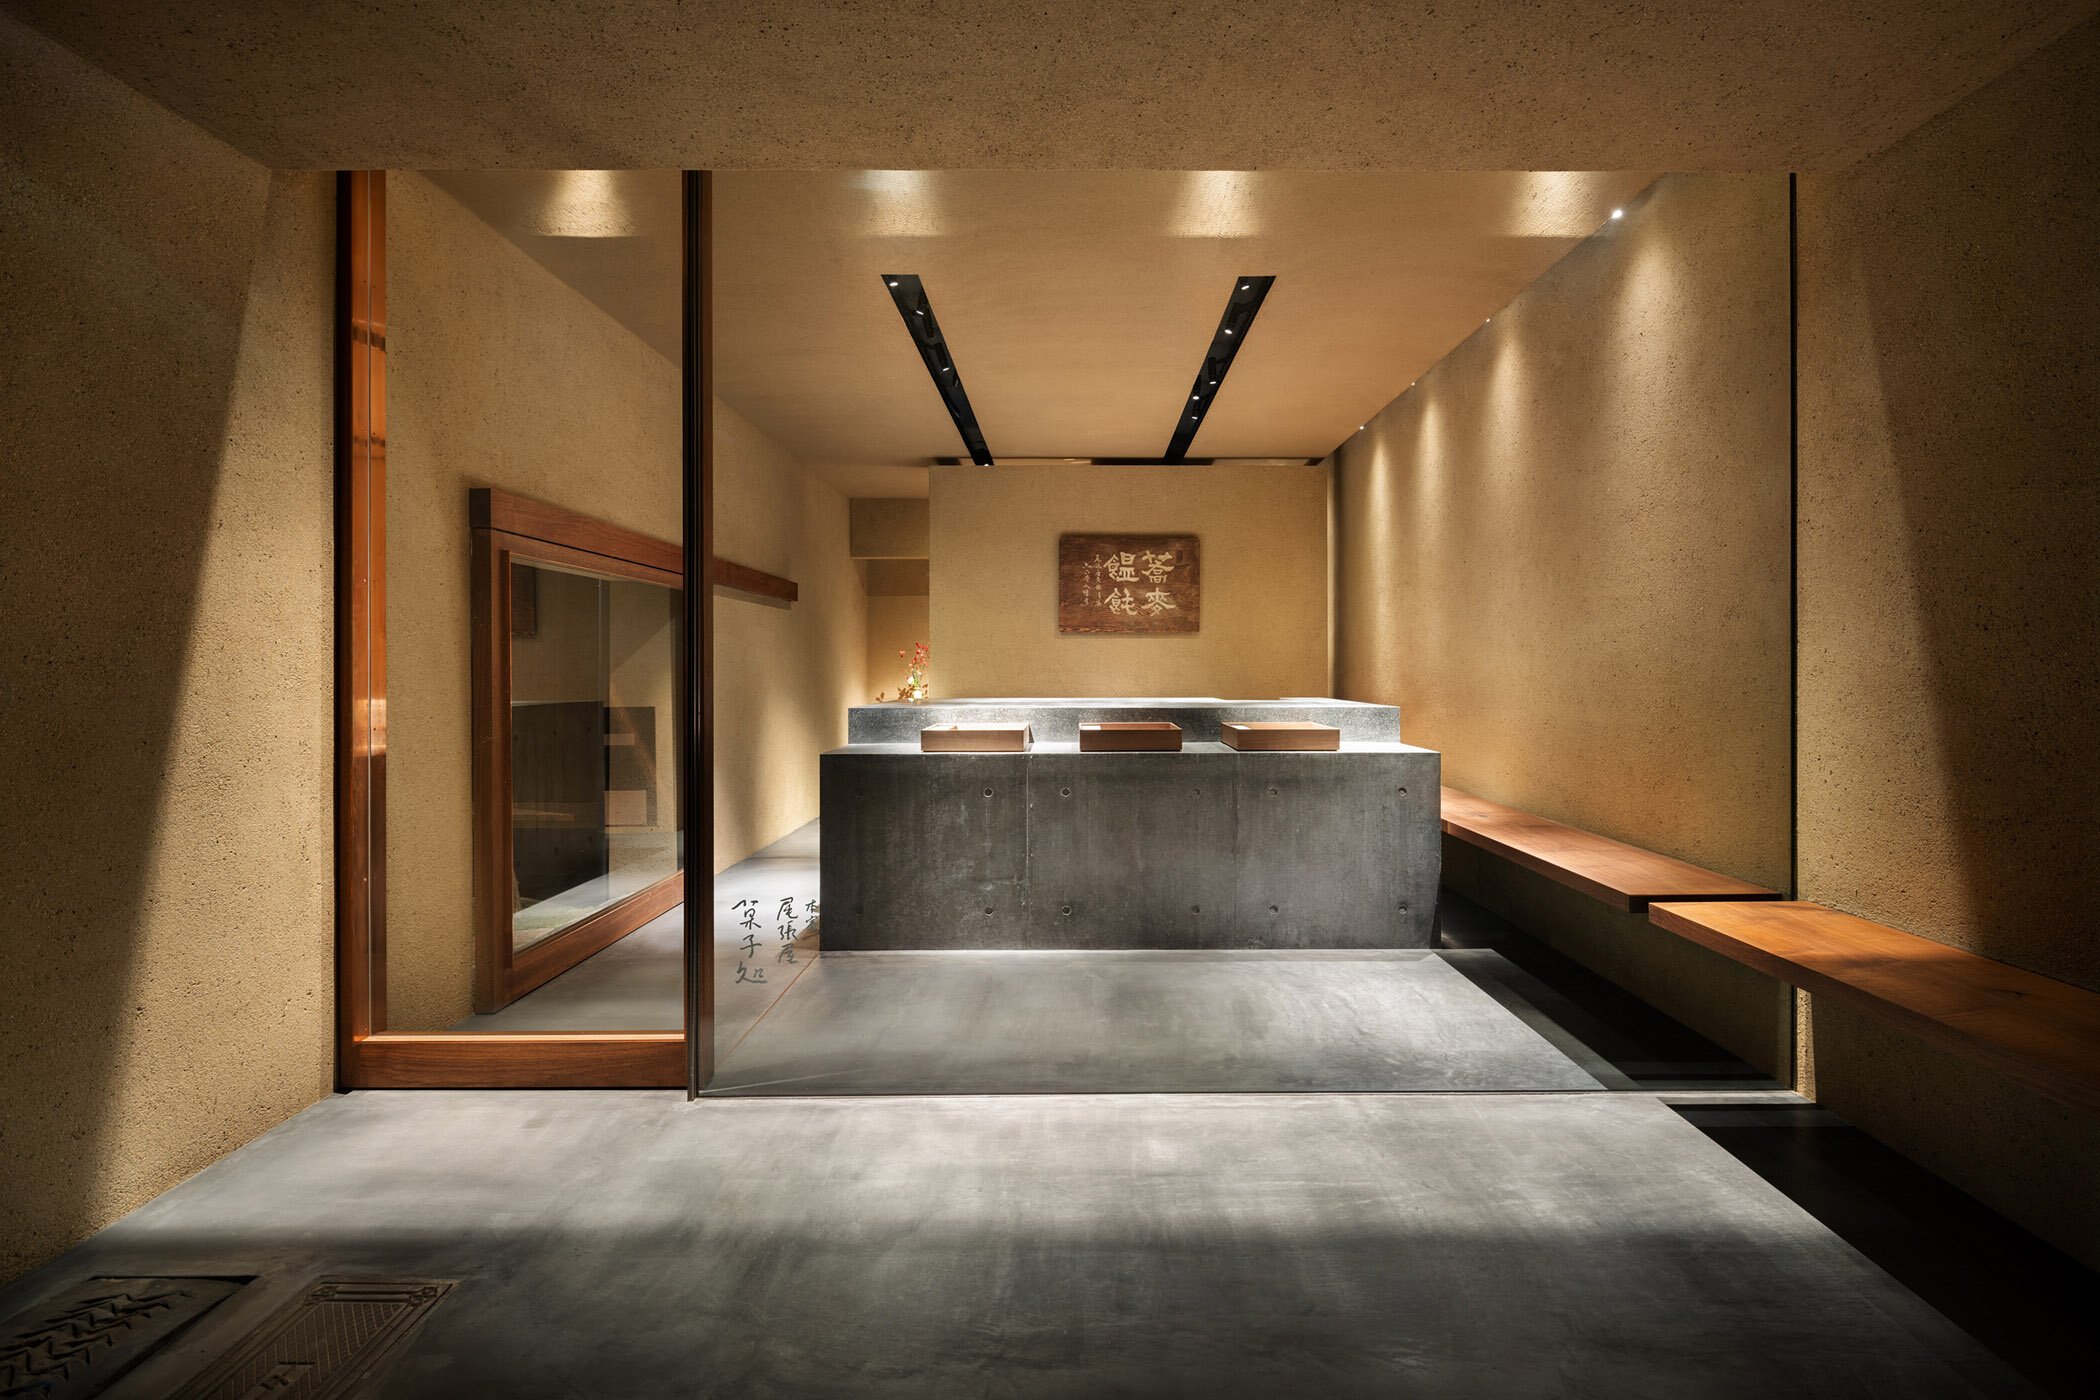  柳原照弘 Teruhiro Yanagihara Studioがインテリアデザインを手掛けた京都の尾張屋本店 菓子処 